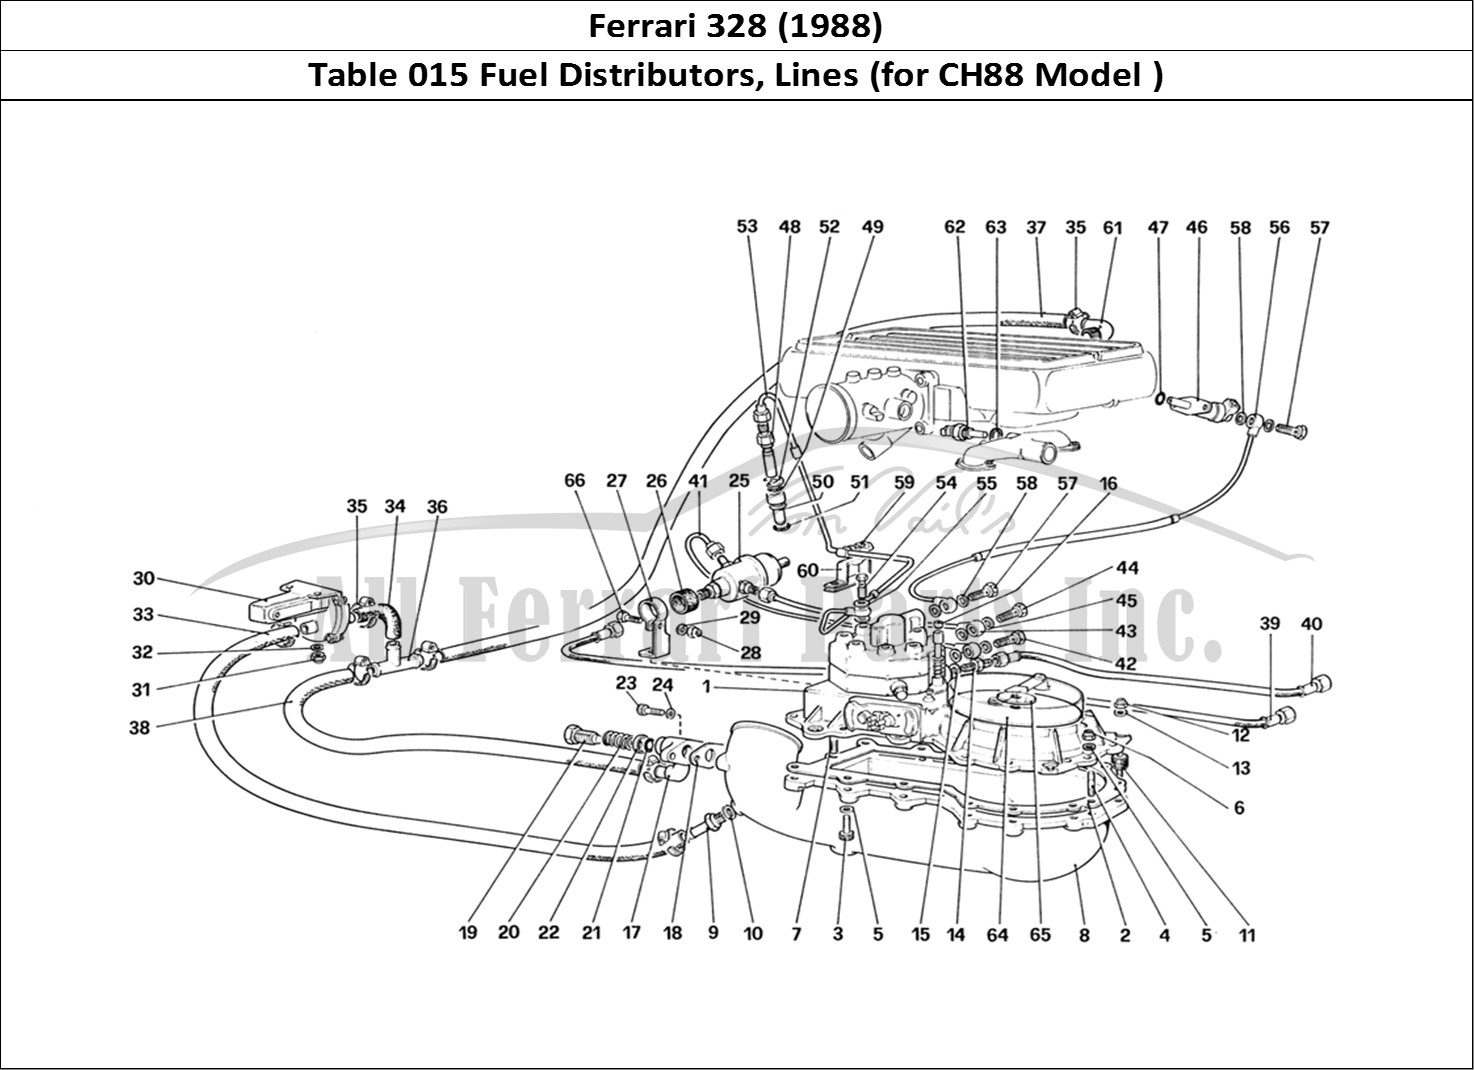 Ferrari Parts Ferrari 328 (1988) Page 015 Fuel Distributors Lines (